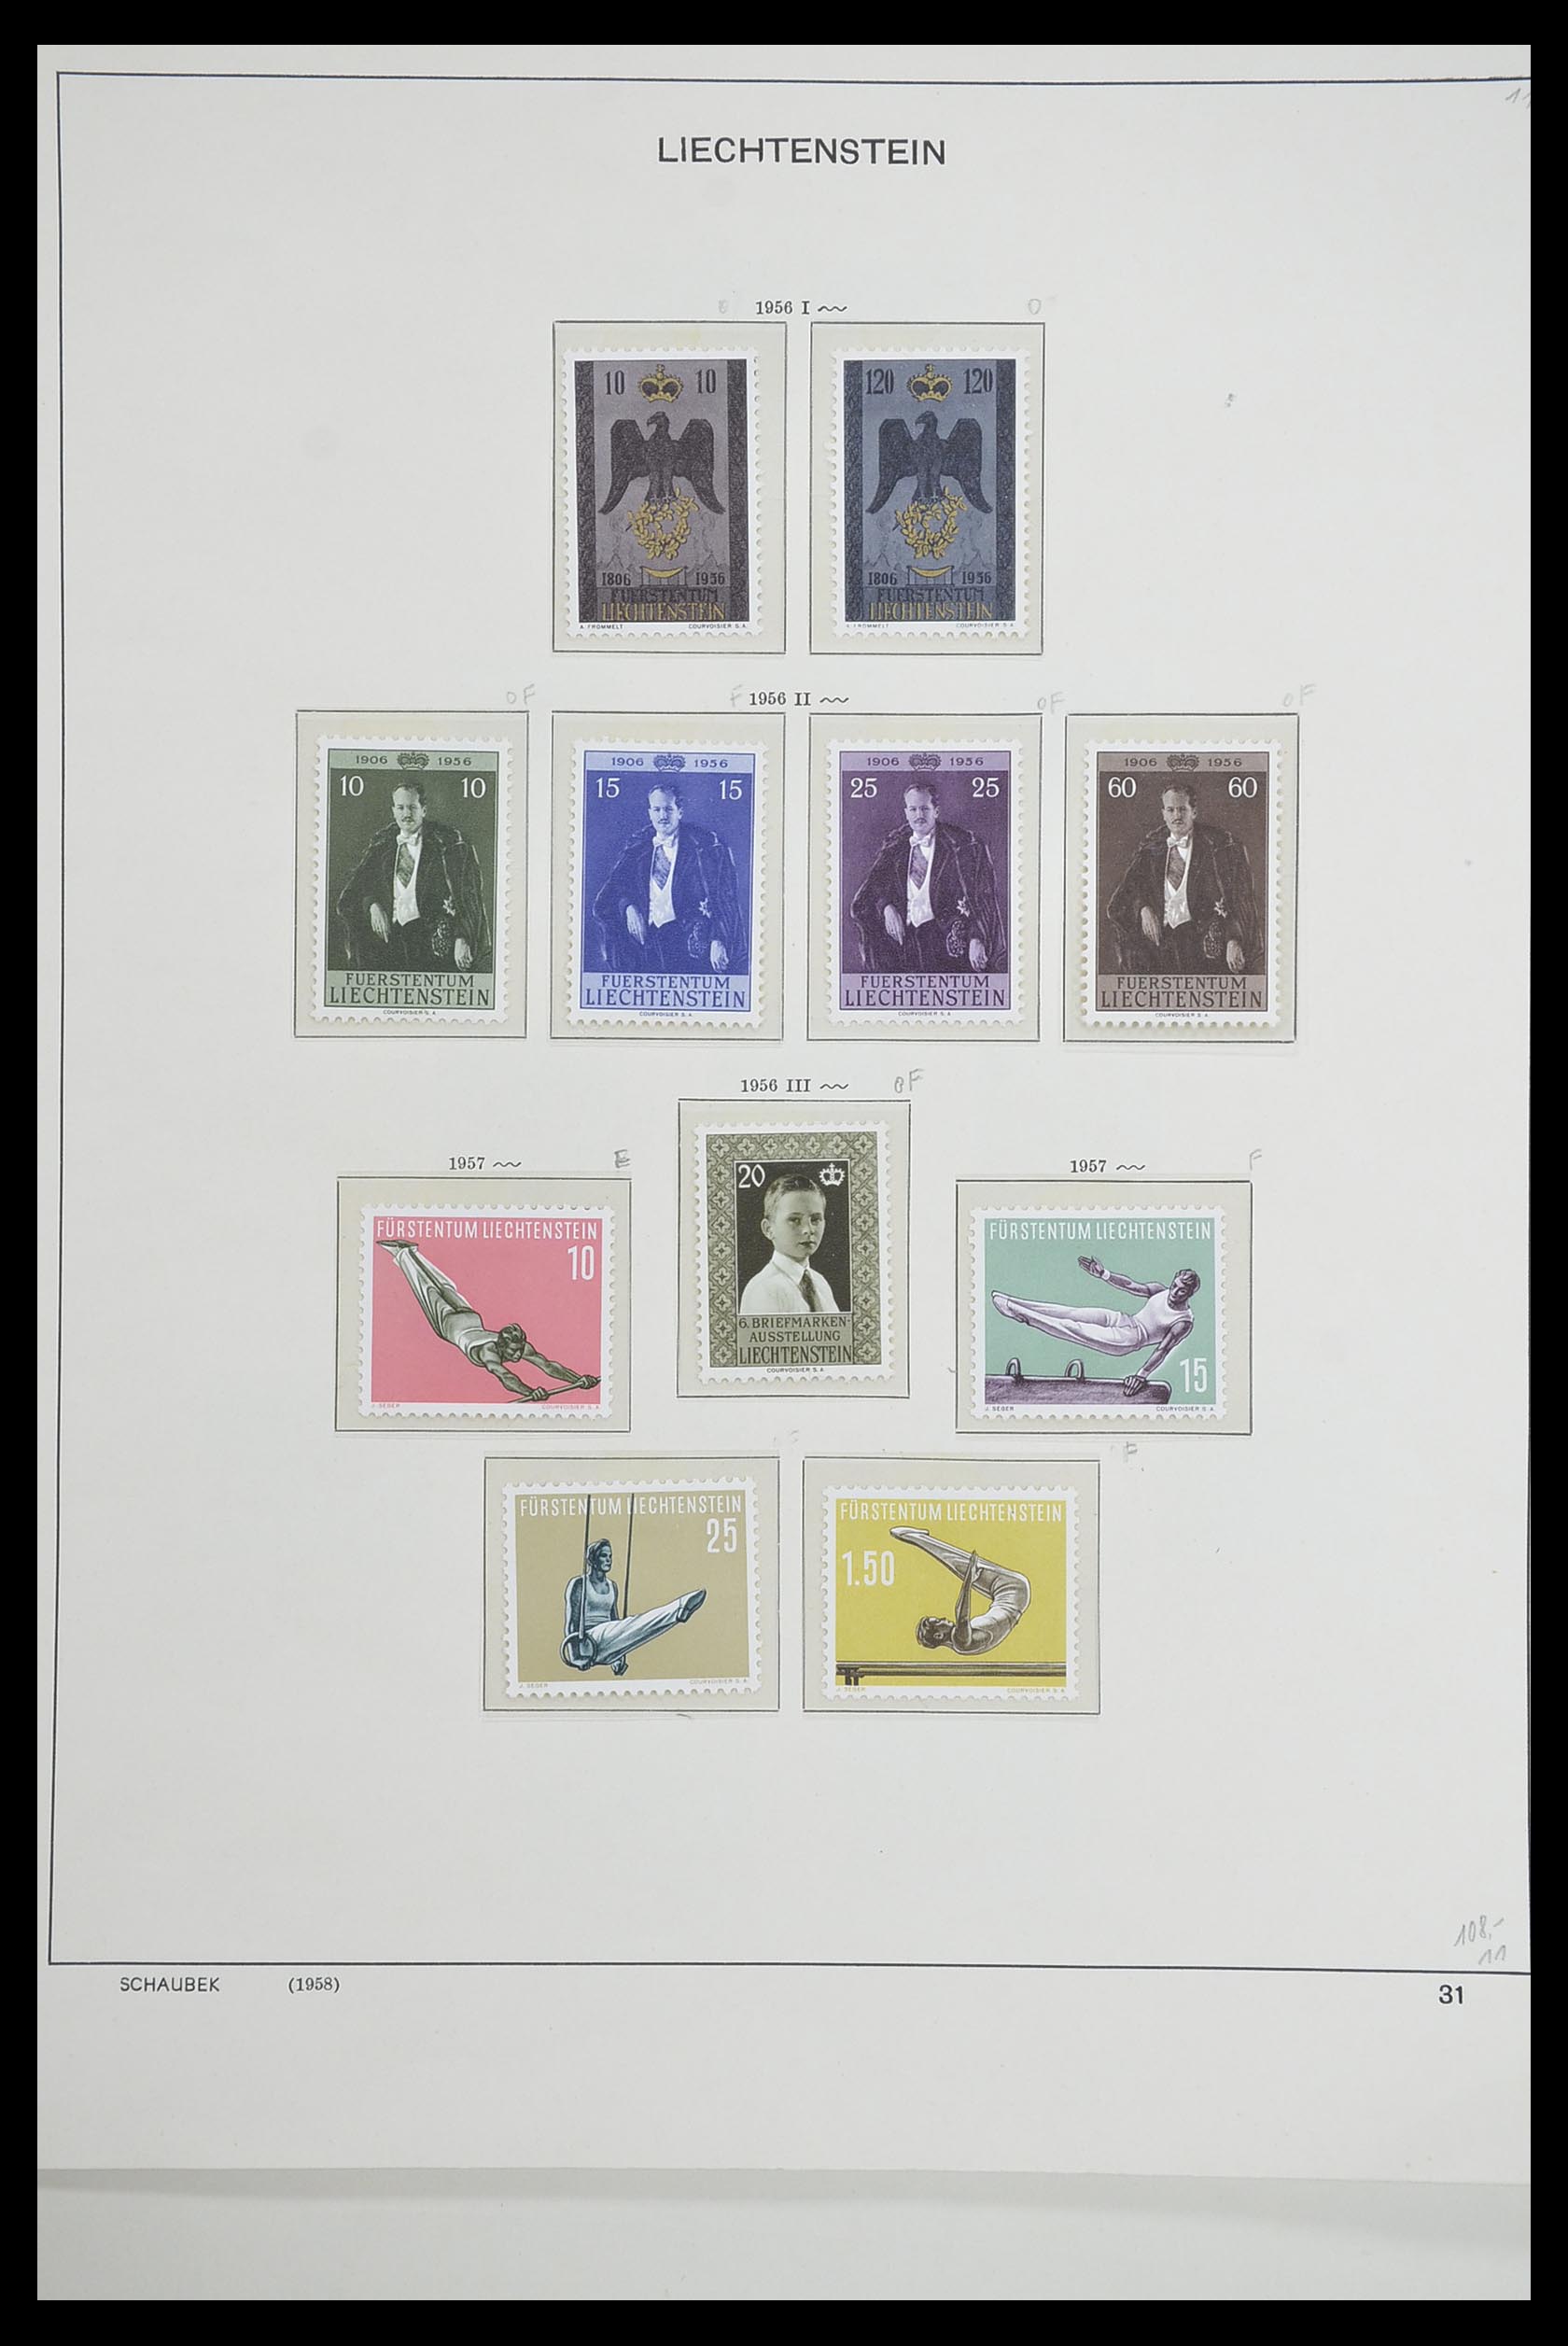 33274 032 - Stamp collection 33274 Liechtenstein 1912-1996.